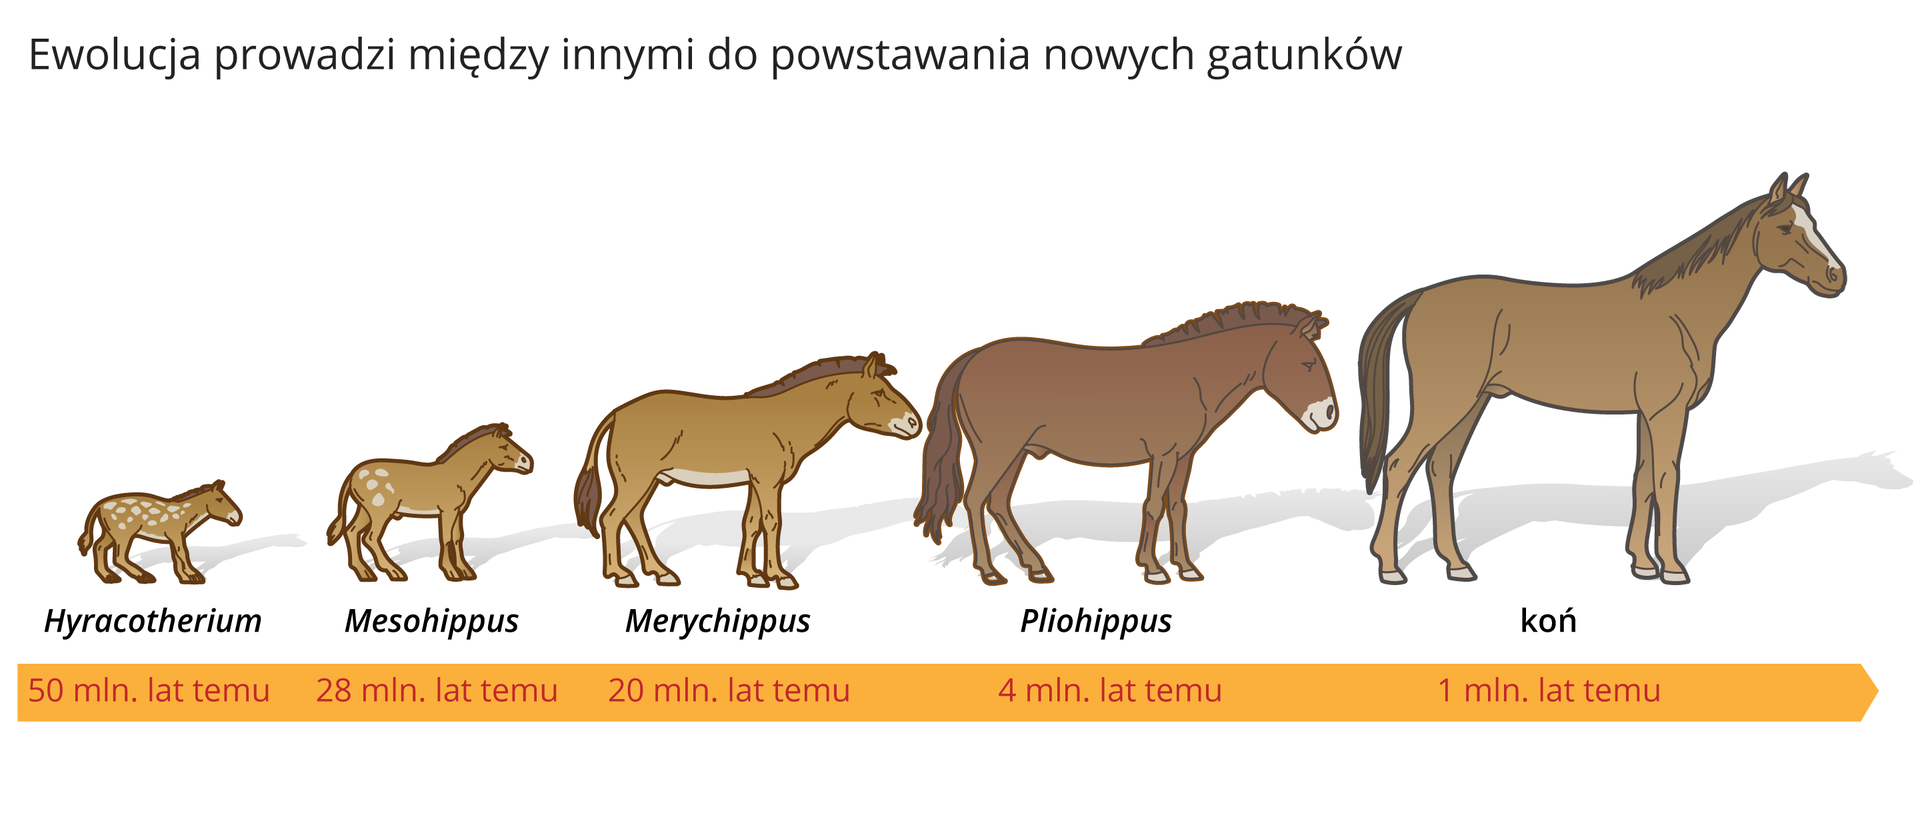 Ilustracja procesu powstawania nowych gatunków na przykładzie pięćdziesięciu milionów lat ewolucji konia.